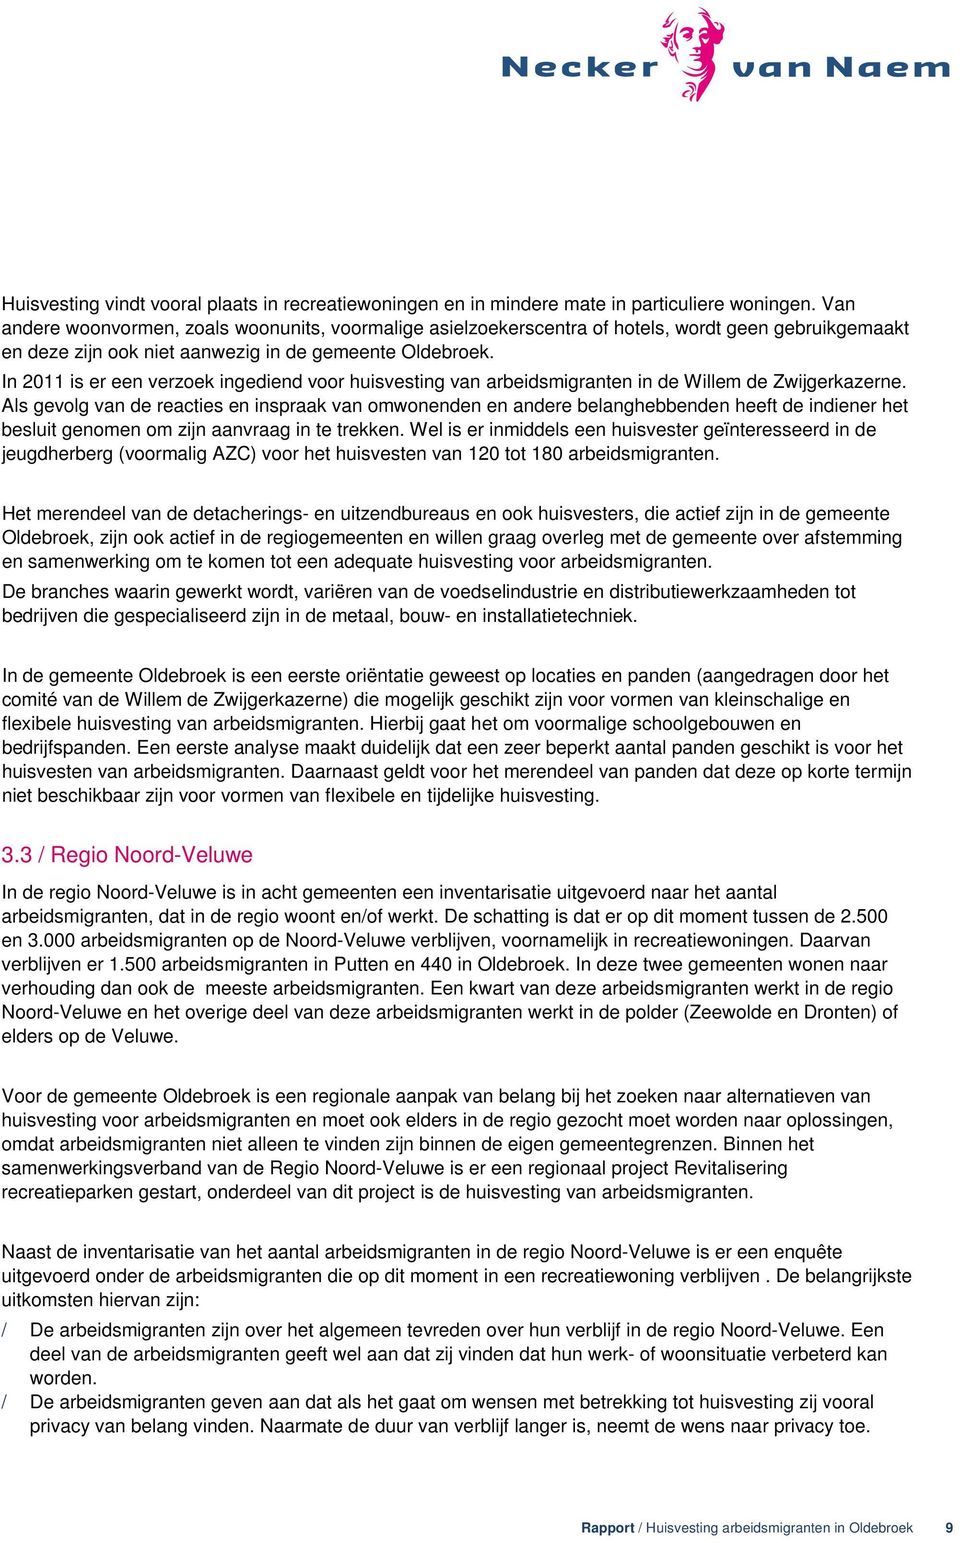 In 2011 is er een verzoek ingediend voor huisvesting van arbeidsmigranten in de Willem de Zwijgerkazerne.